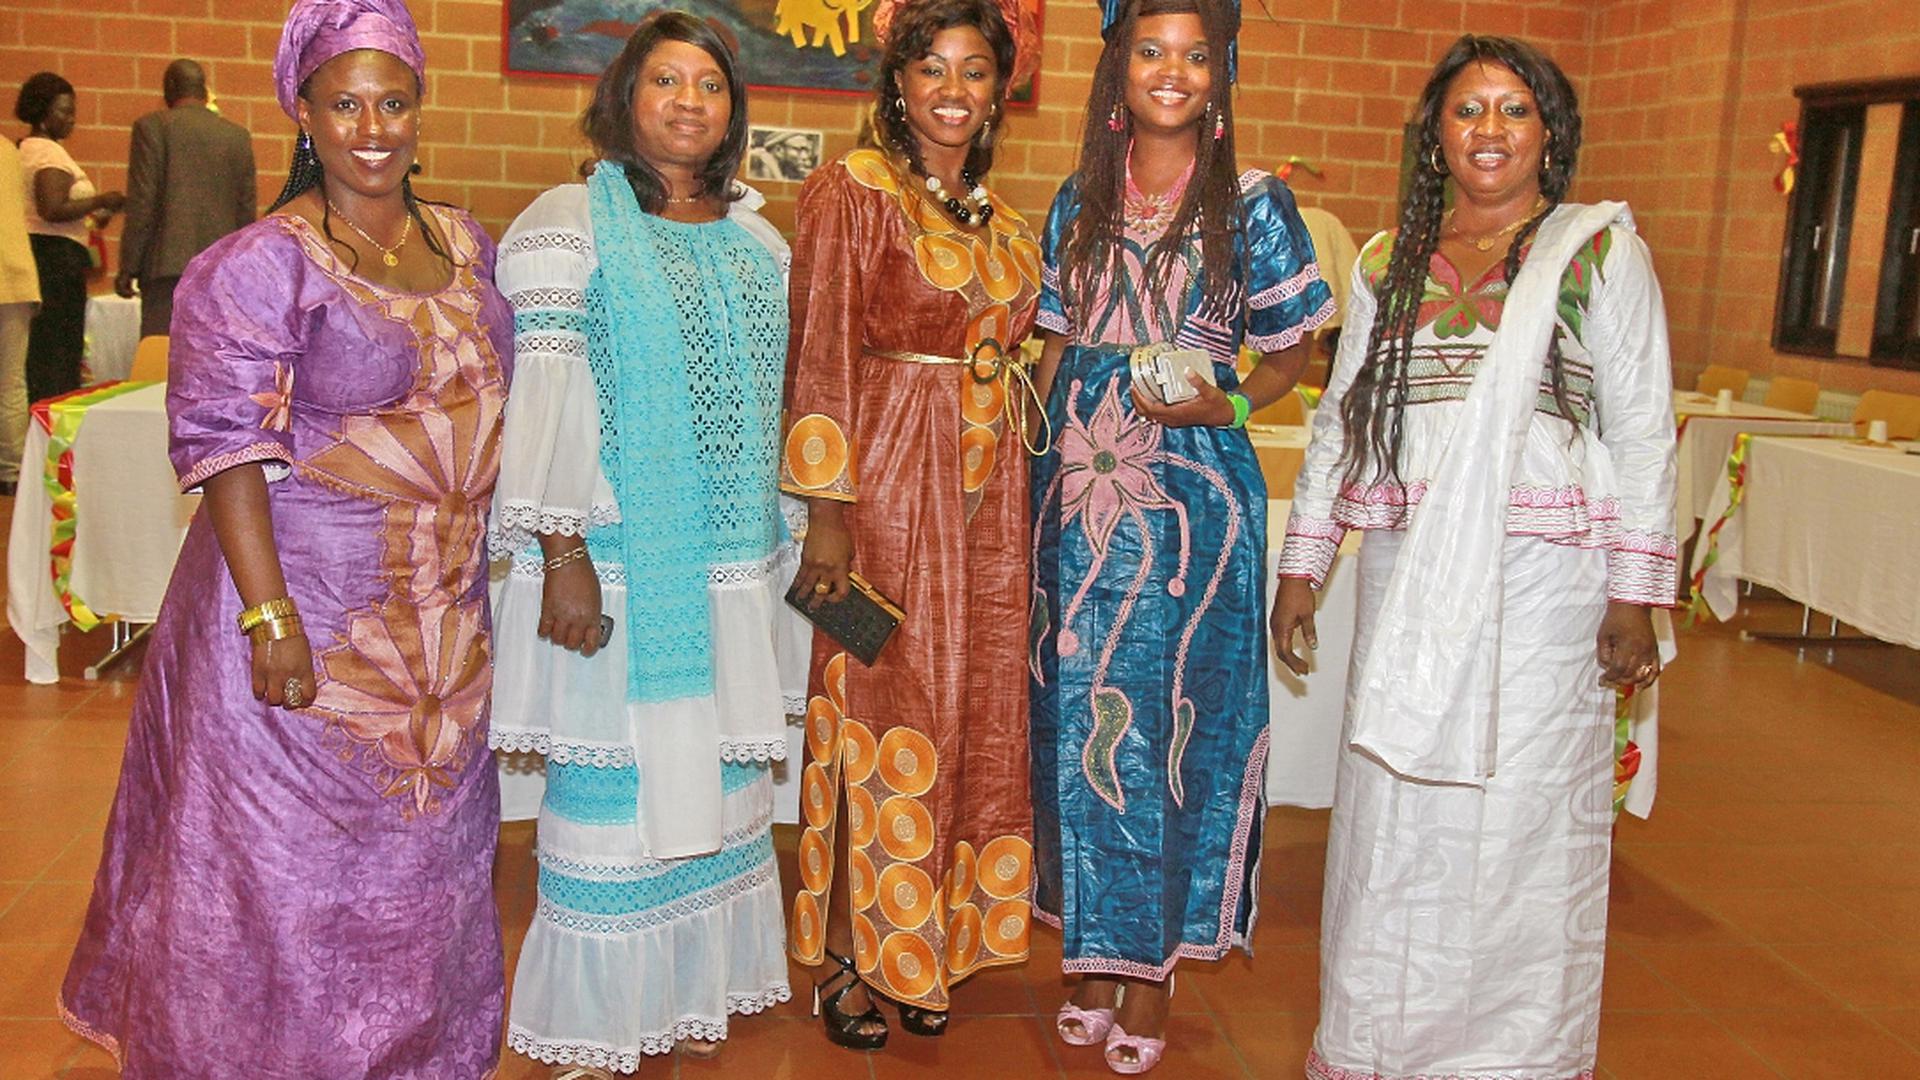 À noite a festa prosseguiu em Crutchen, desta vez num sarau organizado pela associação Luso-Guineense a que nem faltaram os trajes típicos da Guiné-Bissau